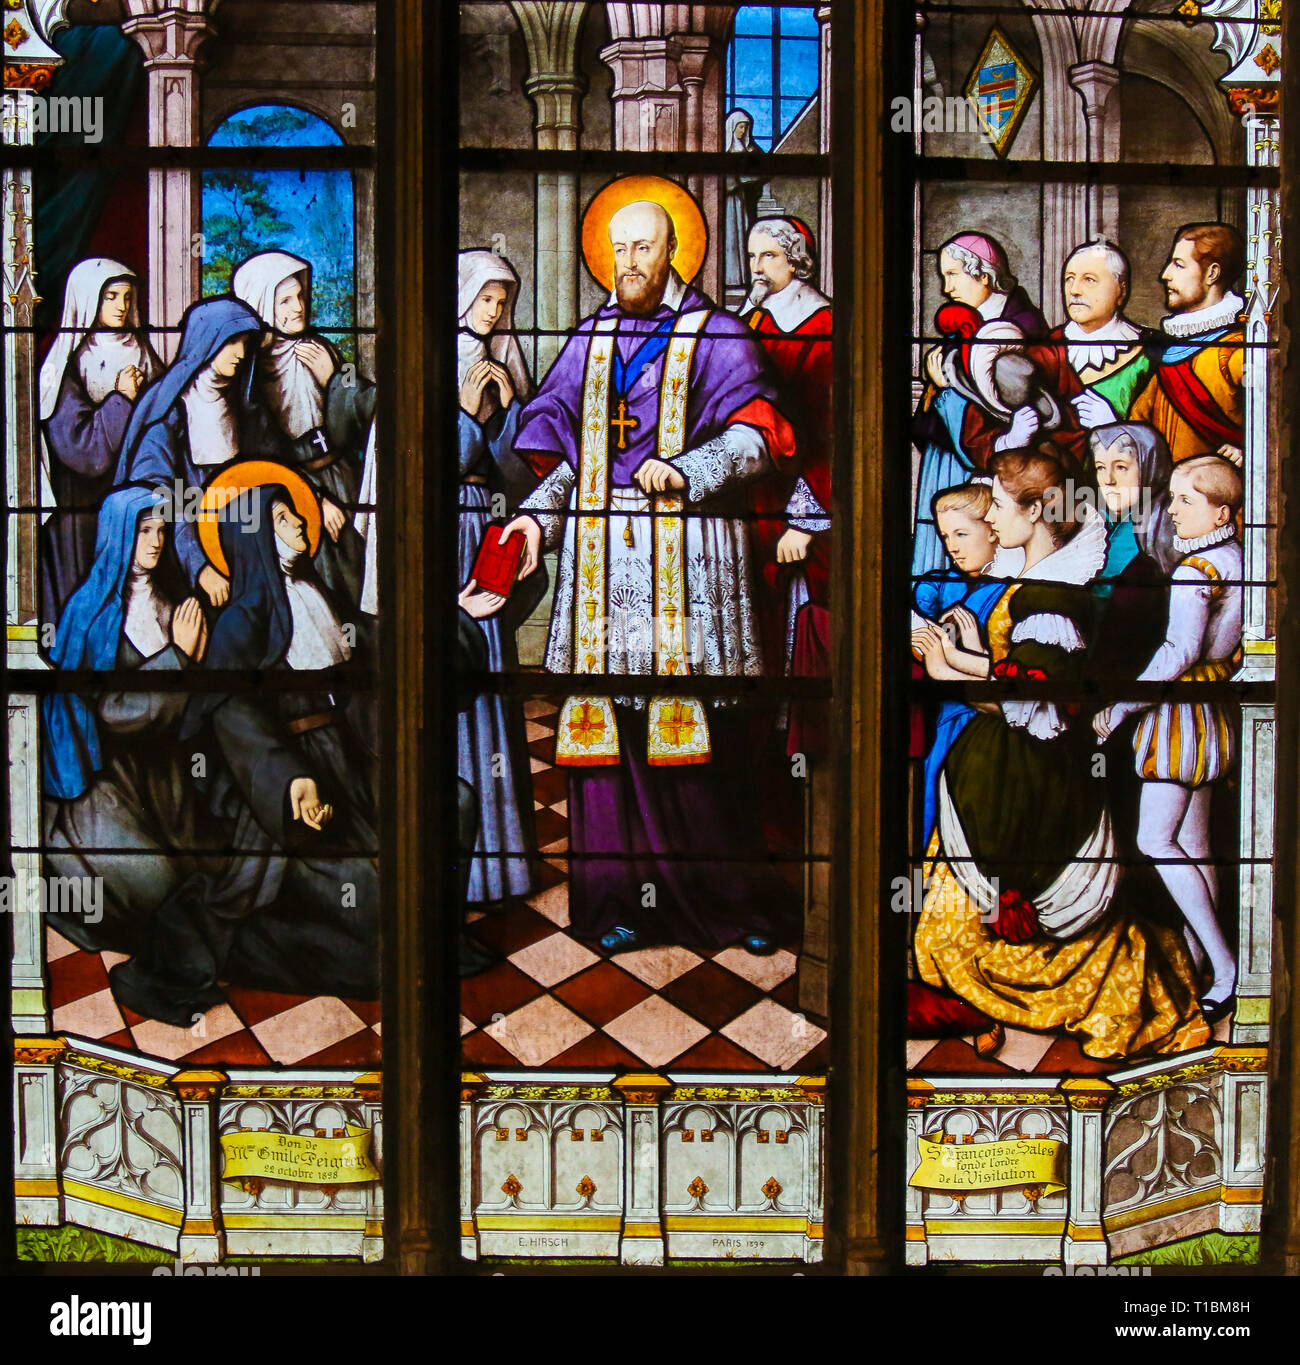 Glasmalereien in der Kirche von St. Severin, Latin, Paris, Frankreich, Saint Francois de Sales, Bischof von Genf. Stockfoto